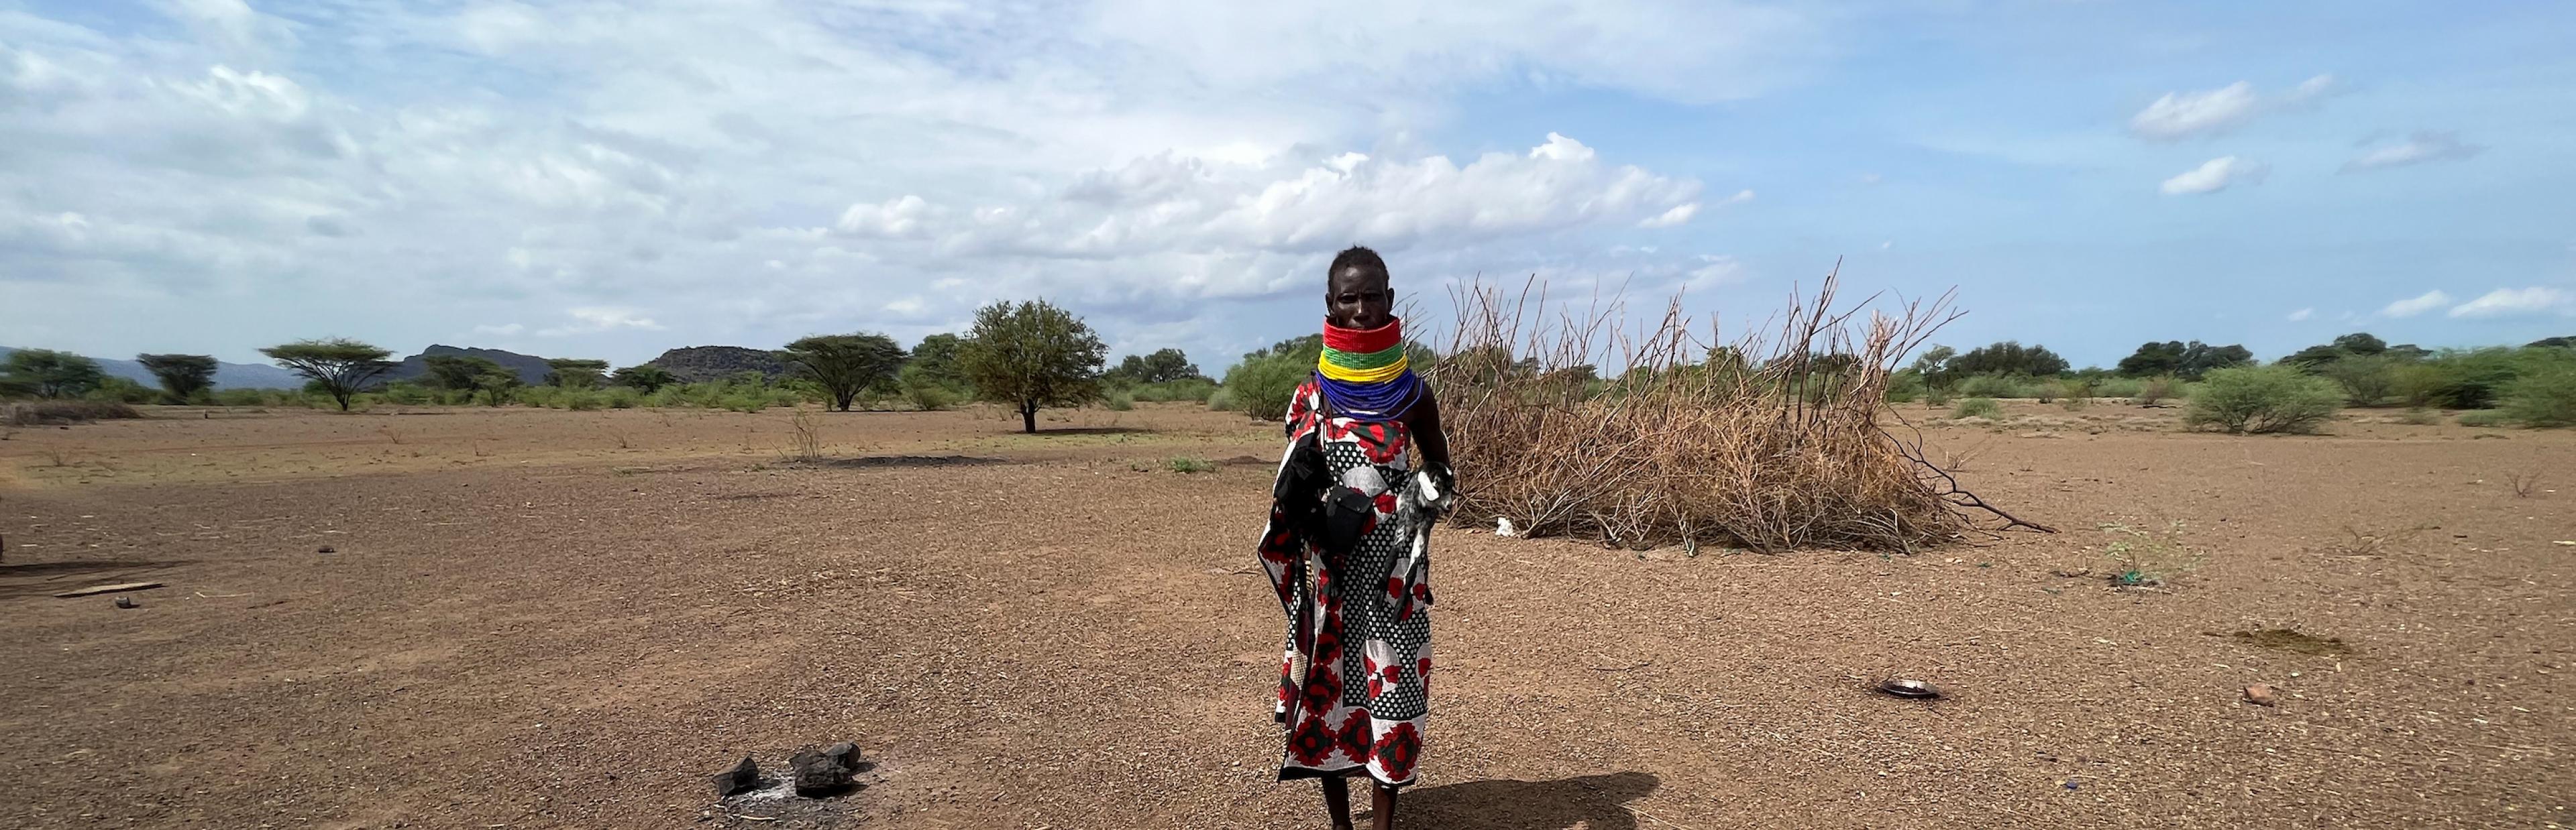 Eine Frau in traditioneller Turkana-Kleidung steht in einer weiten Landschaft vor vielen Ziegenfellen. Eins ist zum Trockenen aufgespannt.